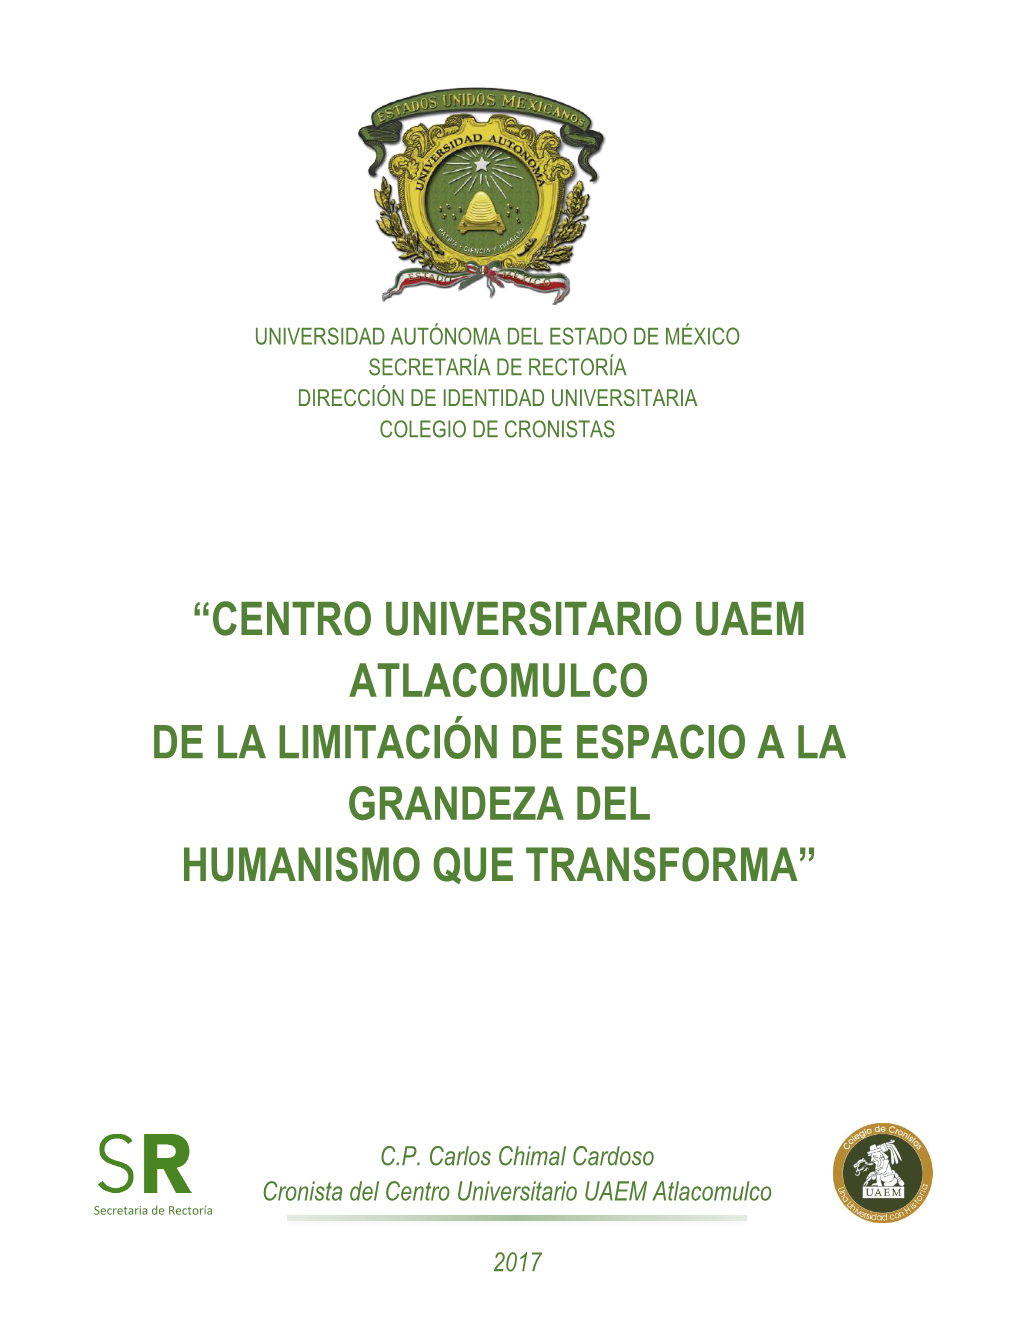 Centro Universitario Uaem Atlacomulco De La Limitación De Espacio a La Grandeza Del Humanismo Que Transforma”